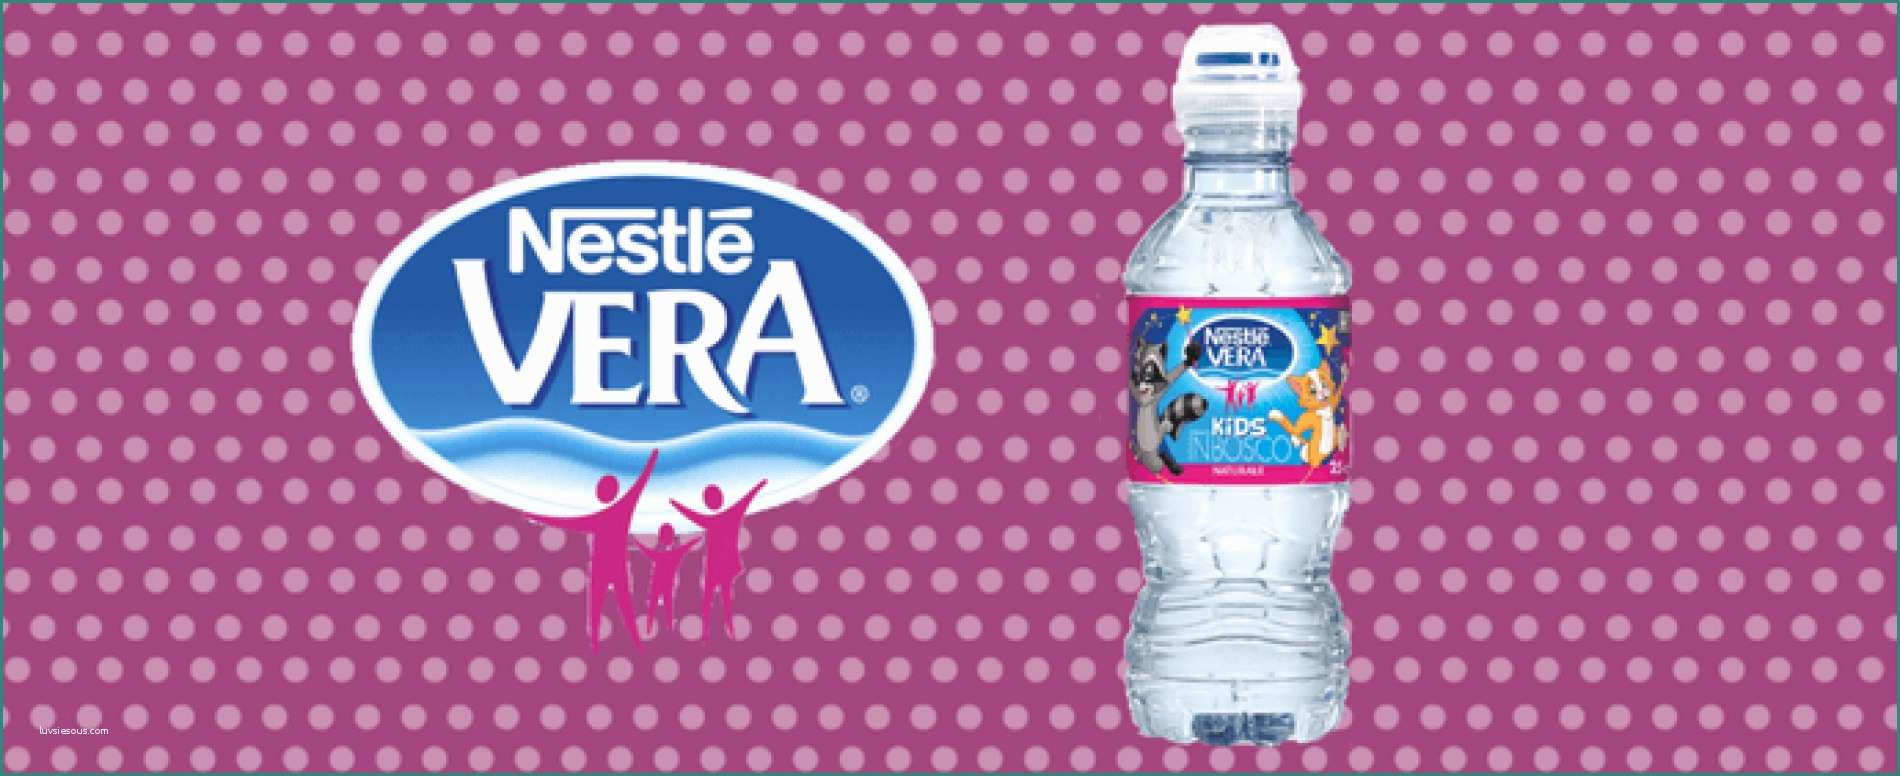 Etichetta Acqua Lete E Happy Night La Bottiglia Nestlé Vera Che Si Illumina Al Buio